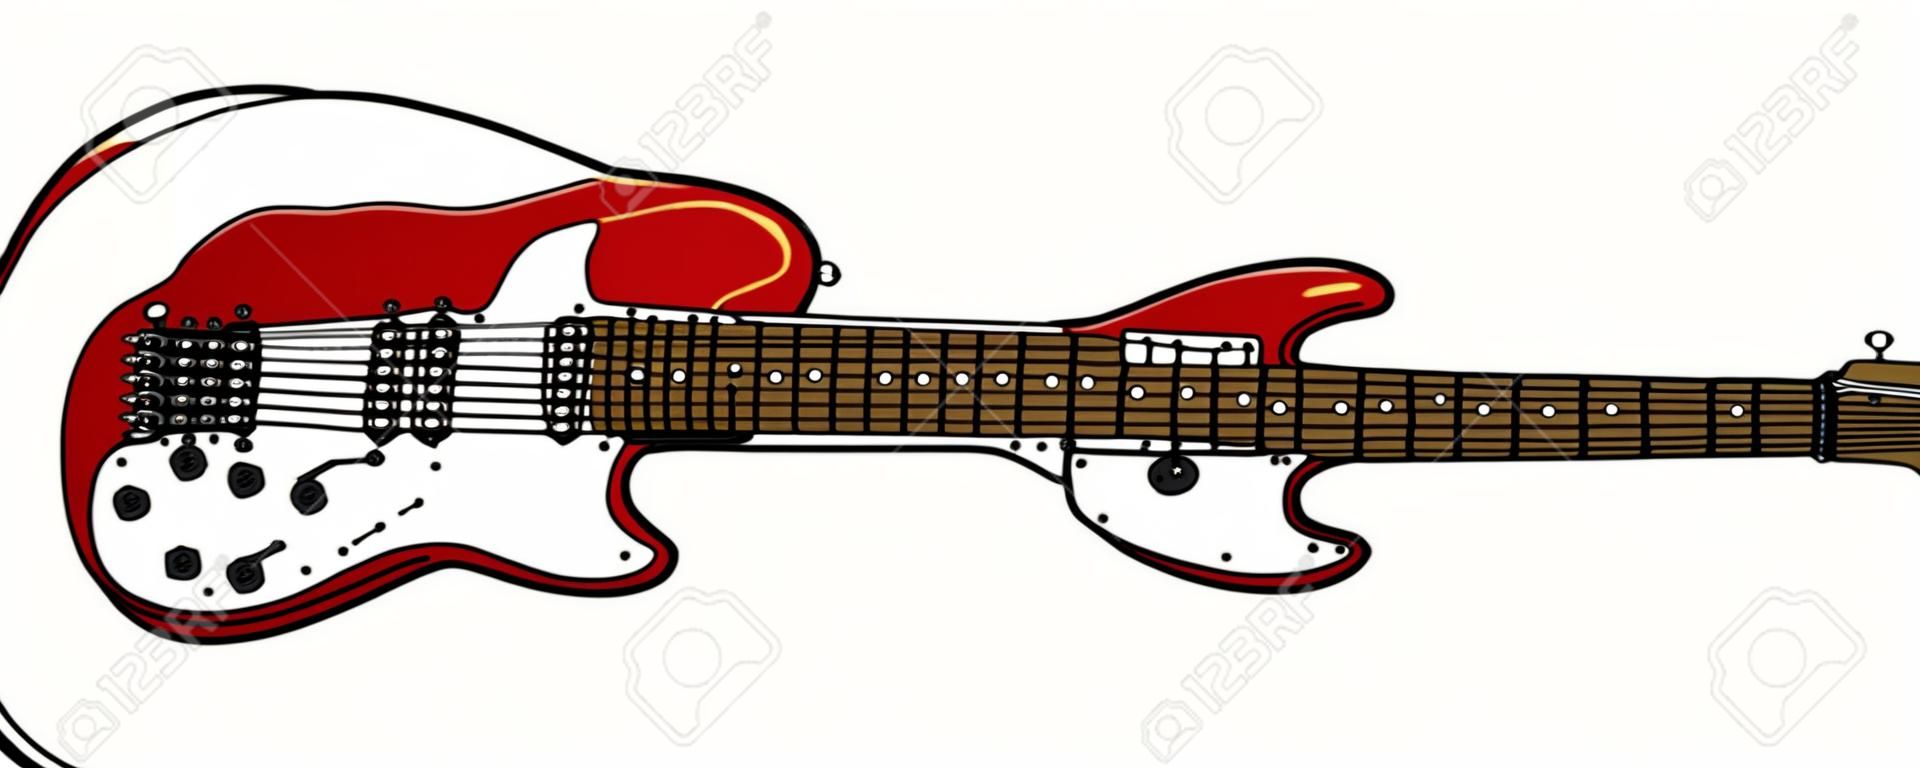 Le dessin à la main vectorisé d'une guitare électrique rouge classique